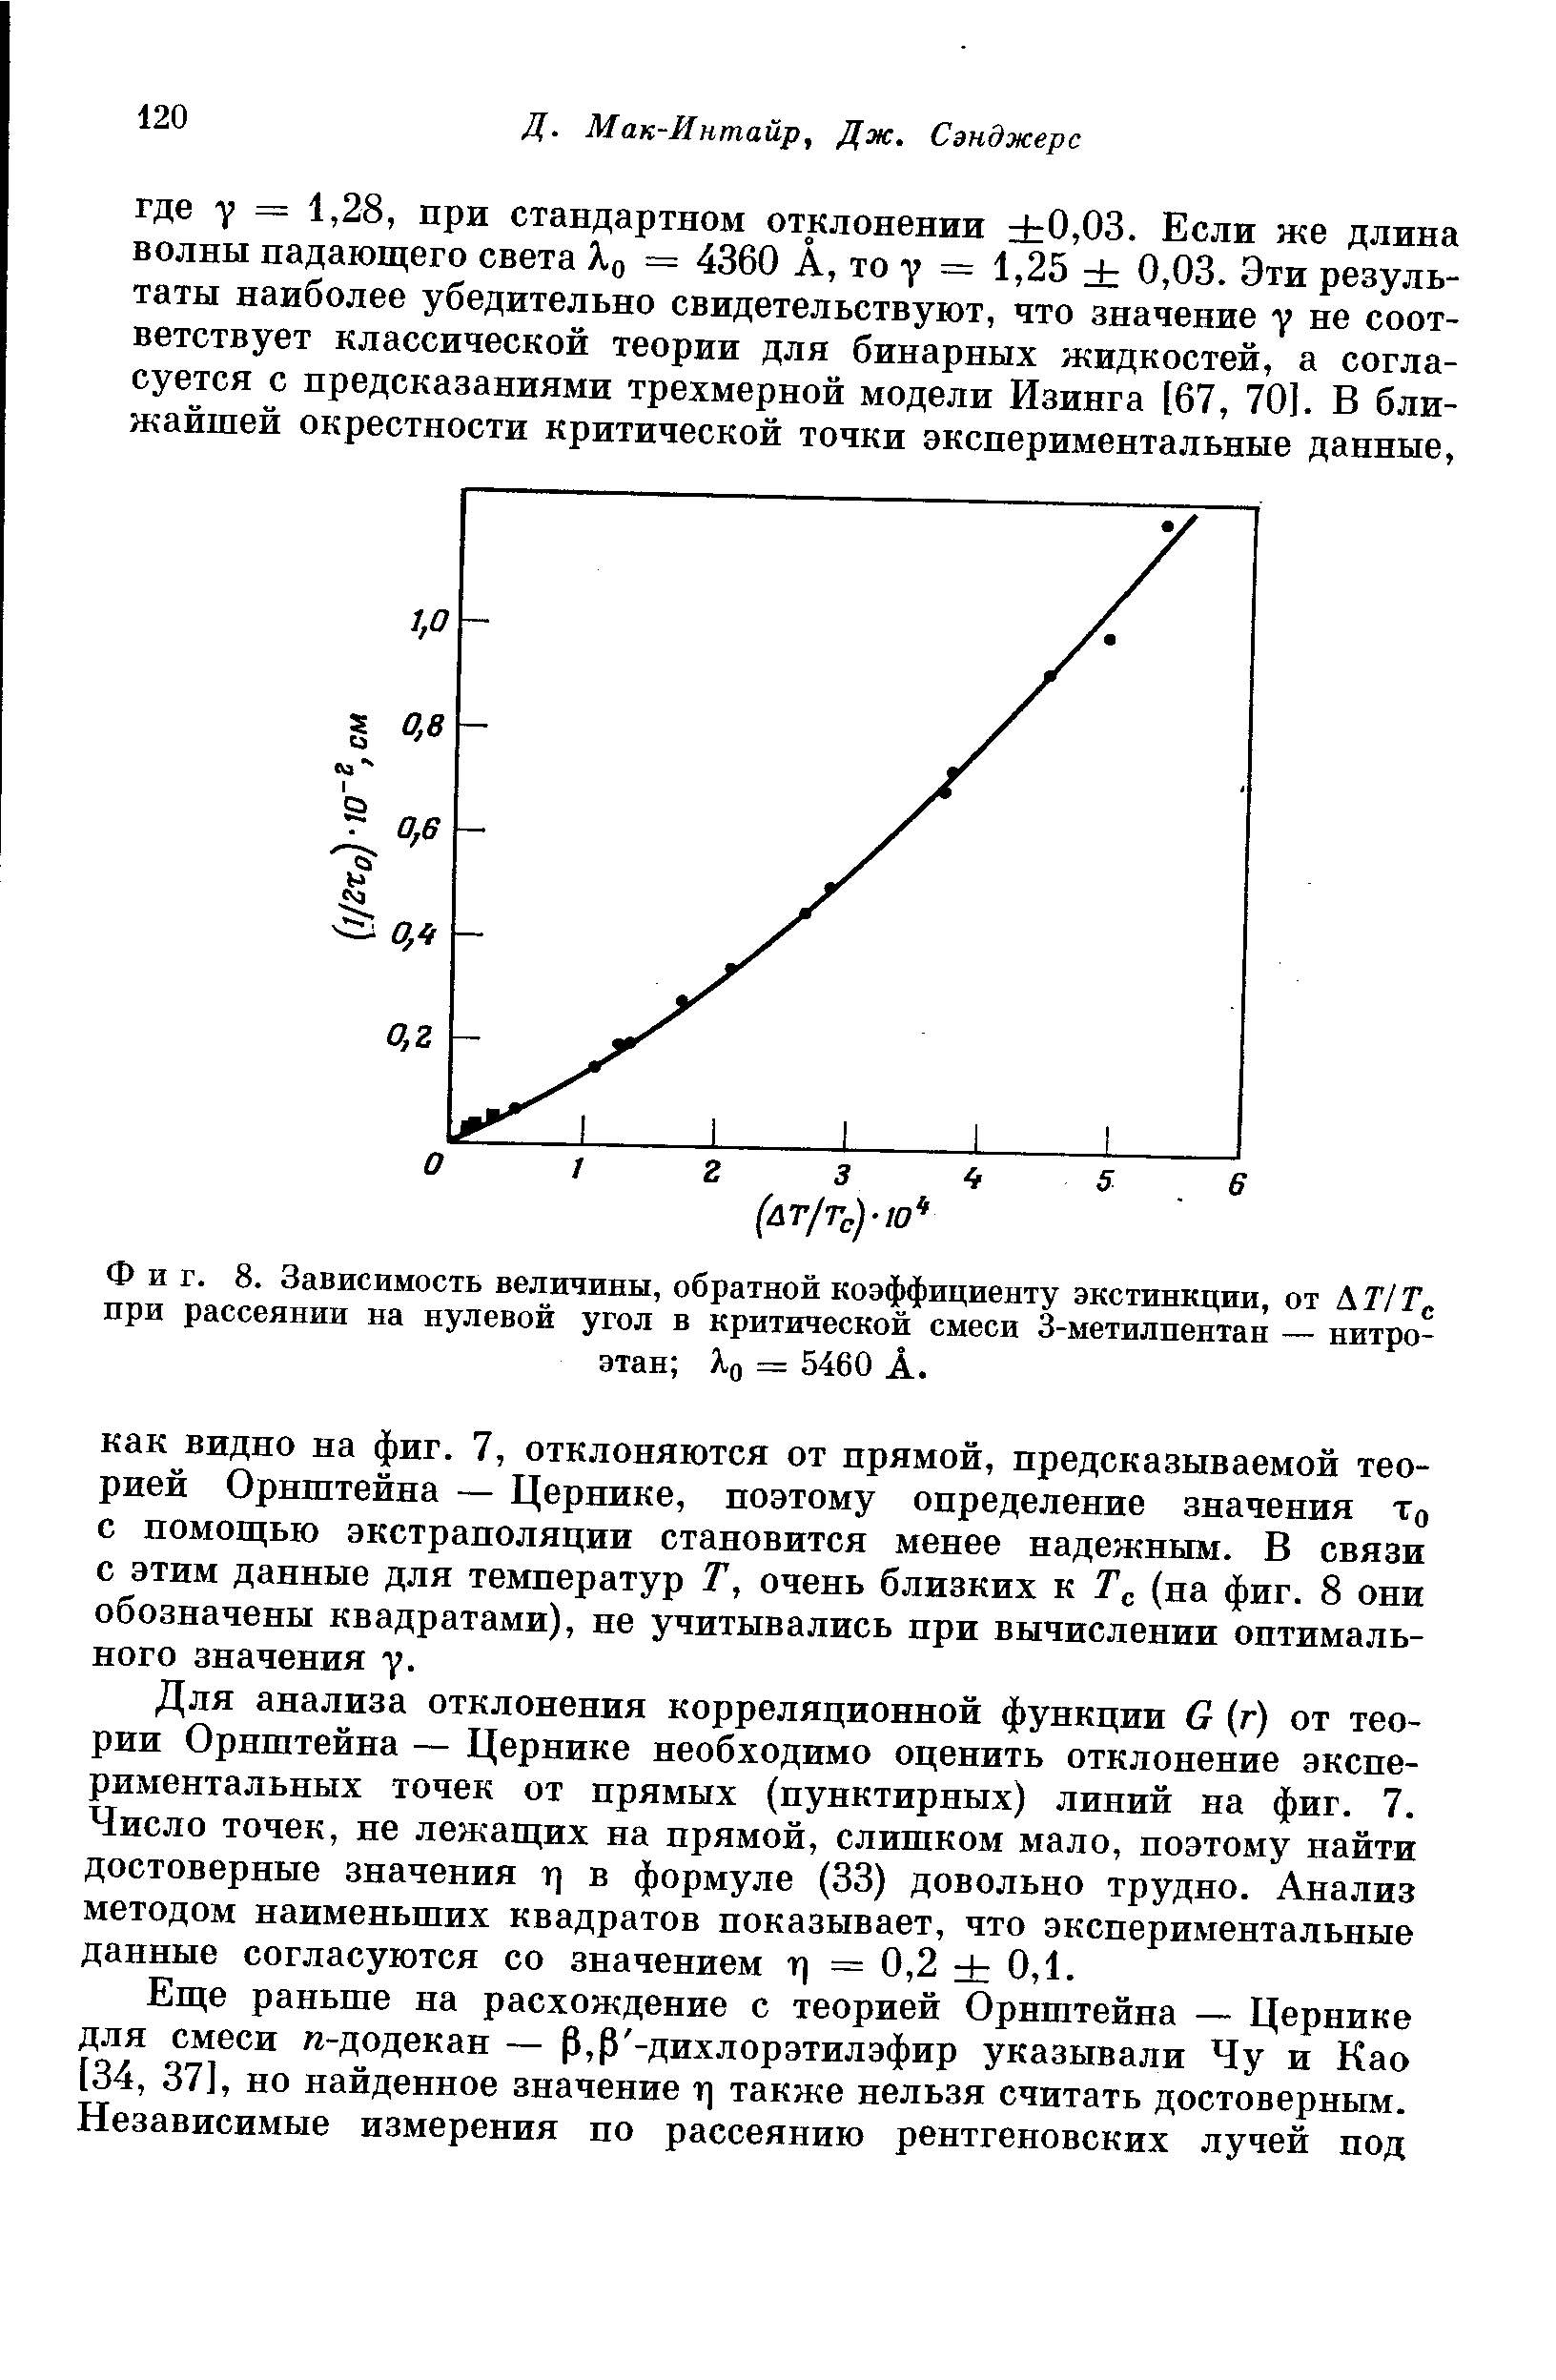 Фиг. 8. Зависимость величины, обратной коэффициенту экстинкции, от ЛТ/Г,. при рассеянии на нулевой угол в критической смеси 3-метилпентан — нитроэтан Яд = 5460 А.
